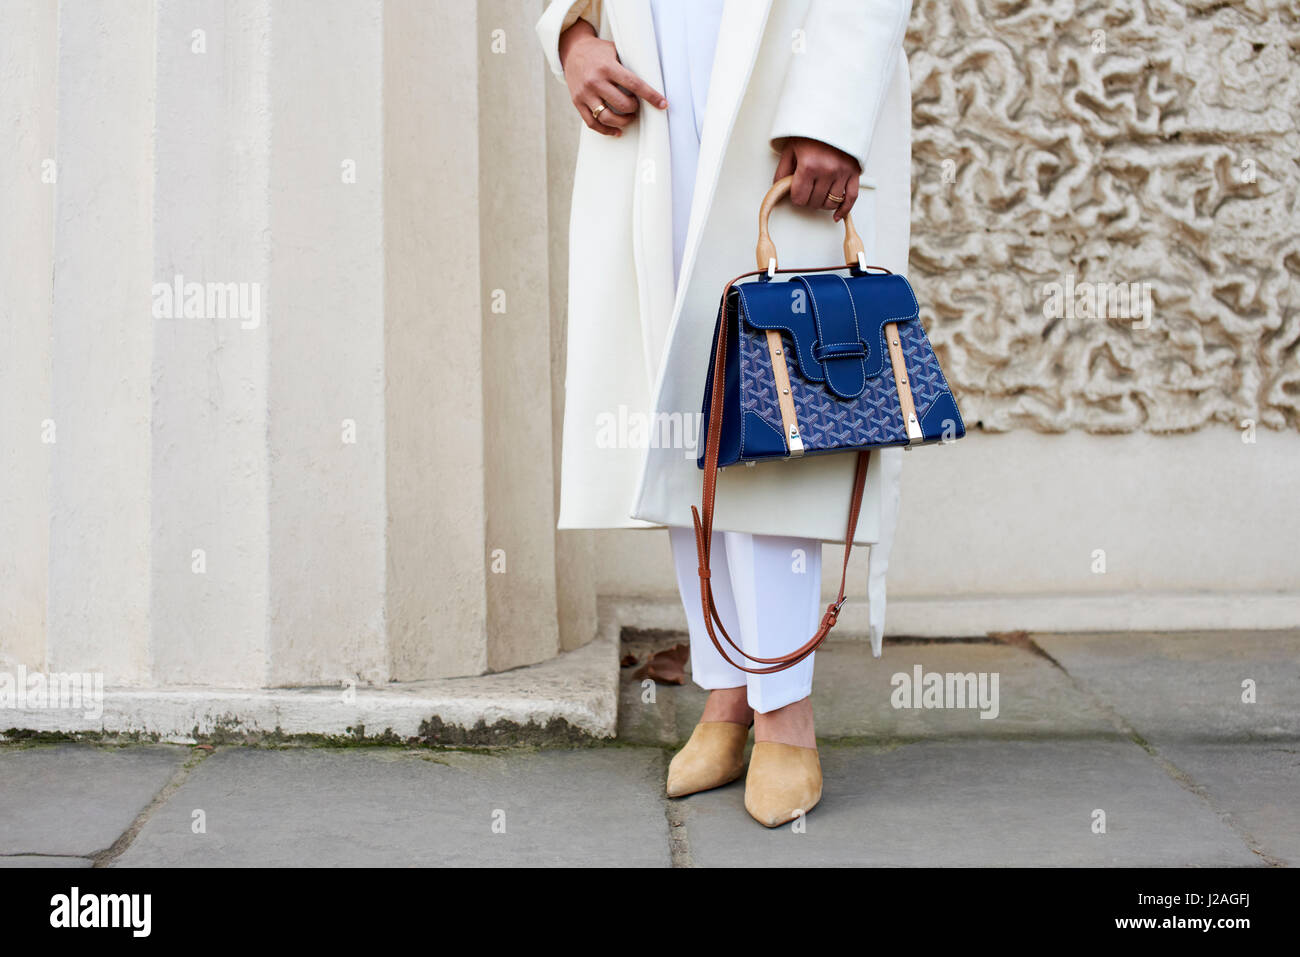 LONDON - Februar 2017: Niedrige Abschnitt Frau mit weißer Hose und Mantel hält eine blaue Handtasche stehend auf der Straße gegen ein Gebäude während der London Fashion Week, horizontale, Vorderansicht Stockfoto